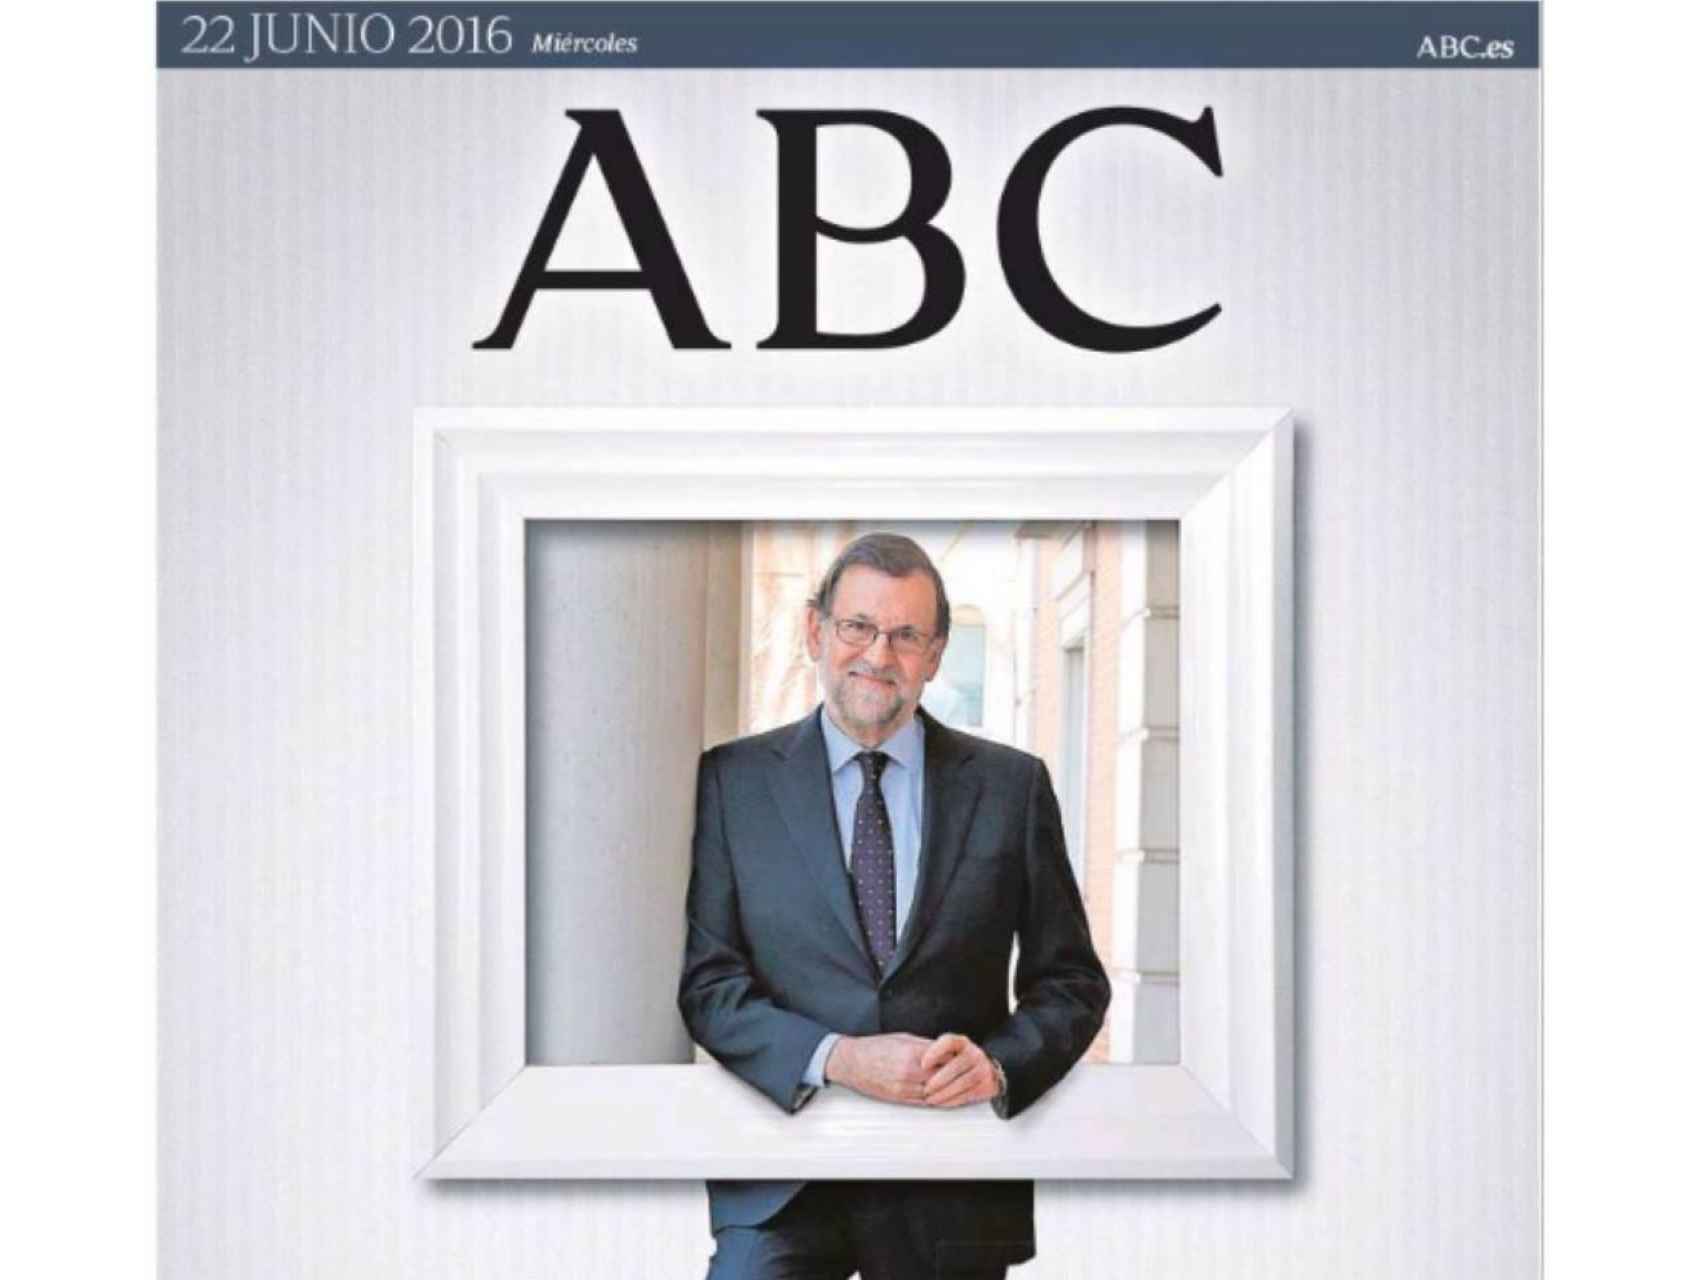 La portada de ABC del 22 de junio 2016